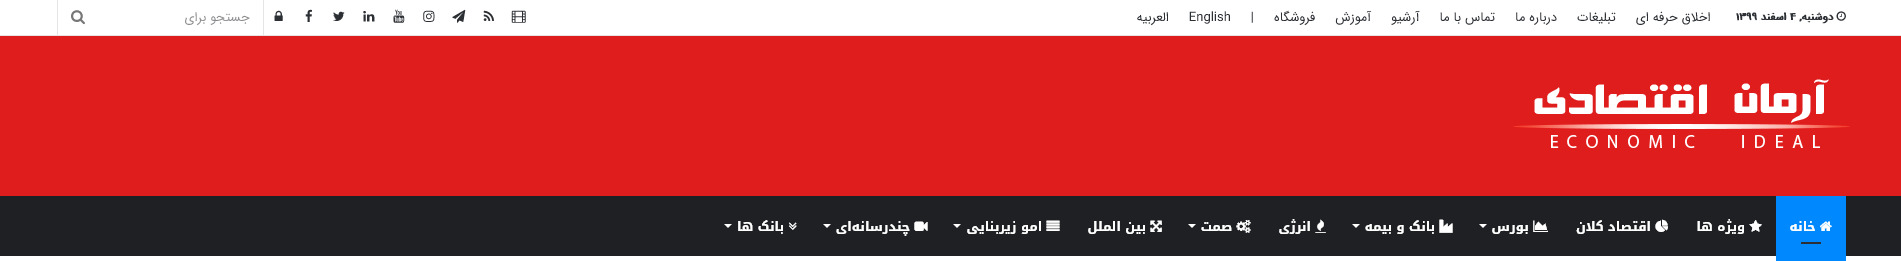 هدر وبسایت محتوا و خبرگذاری پایگاه خبری آرمان اقتصاد اردیبهشت ۱۴۰۰